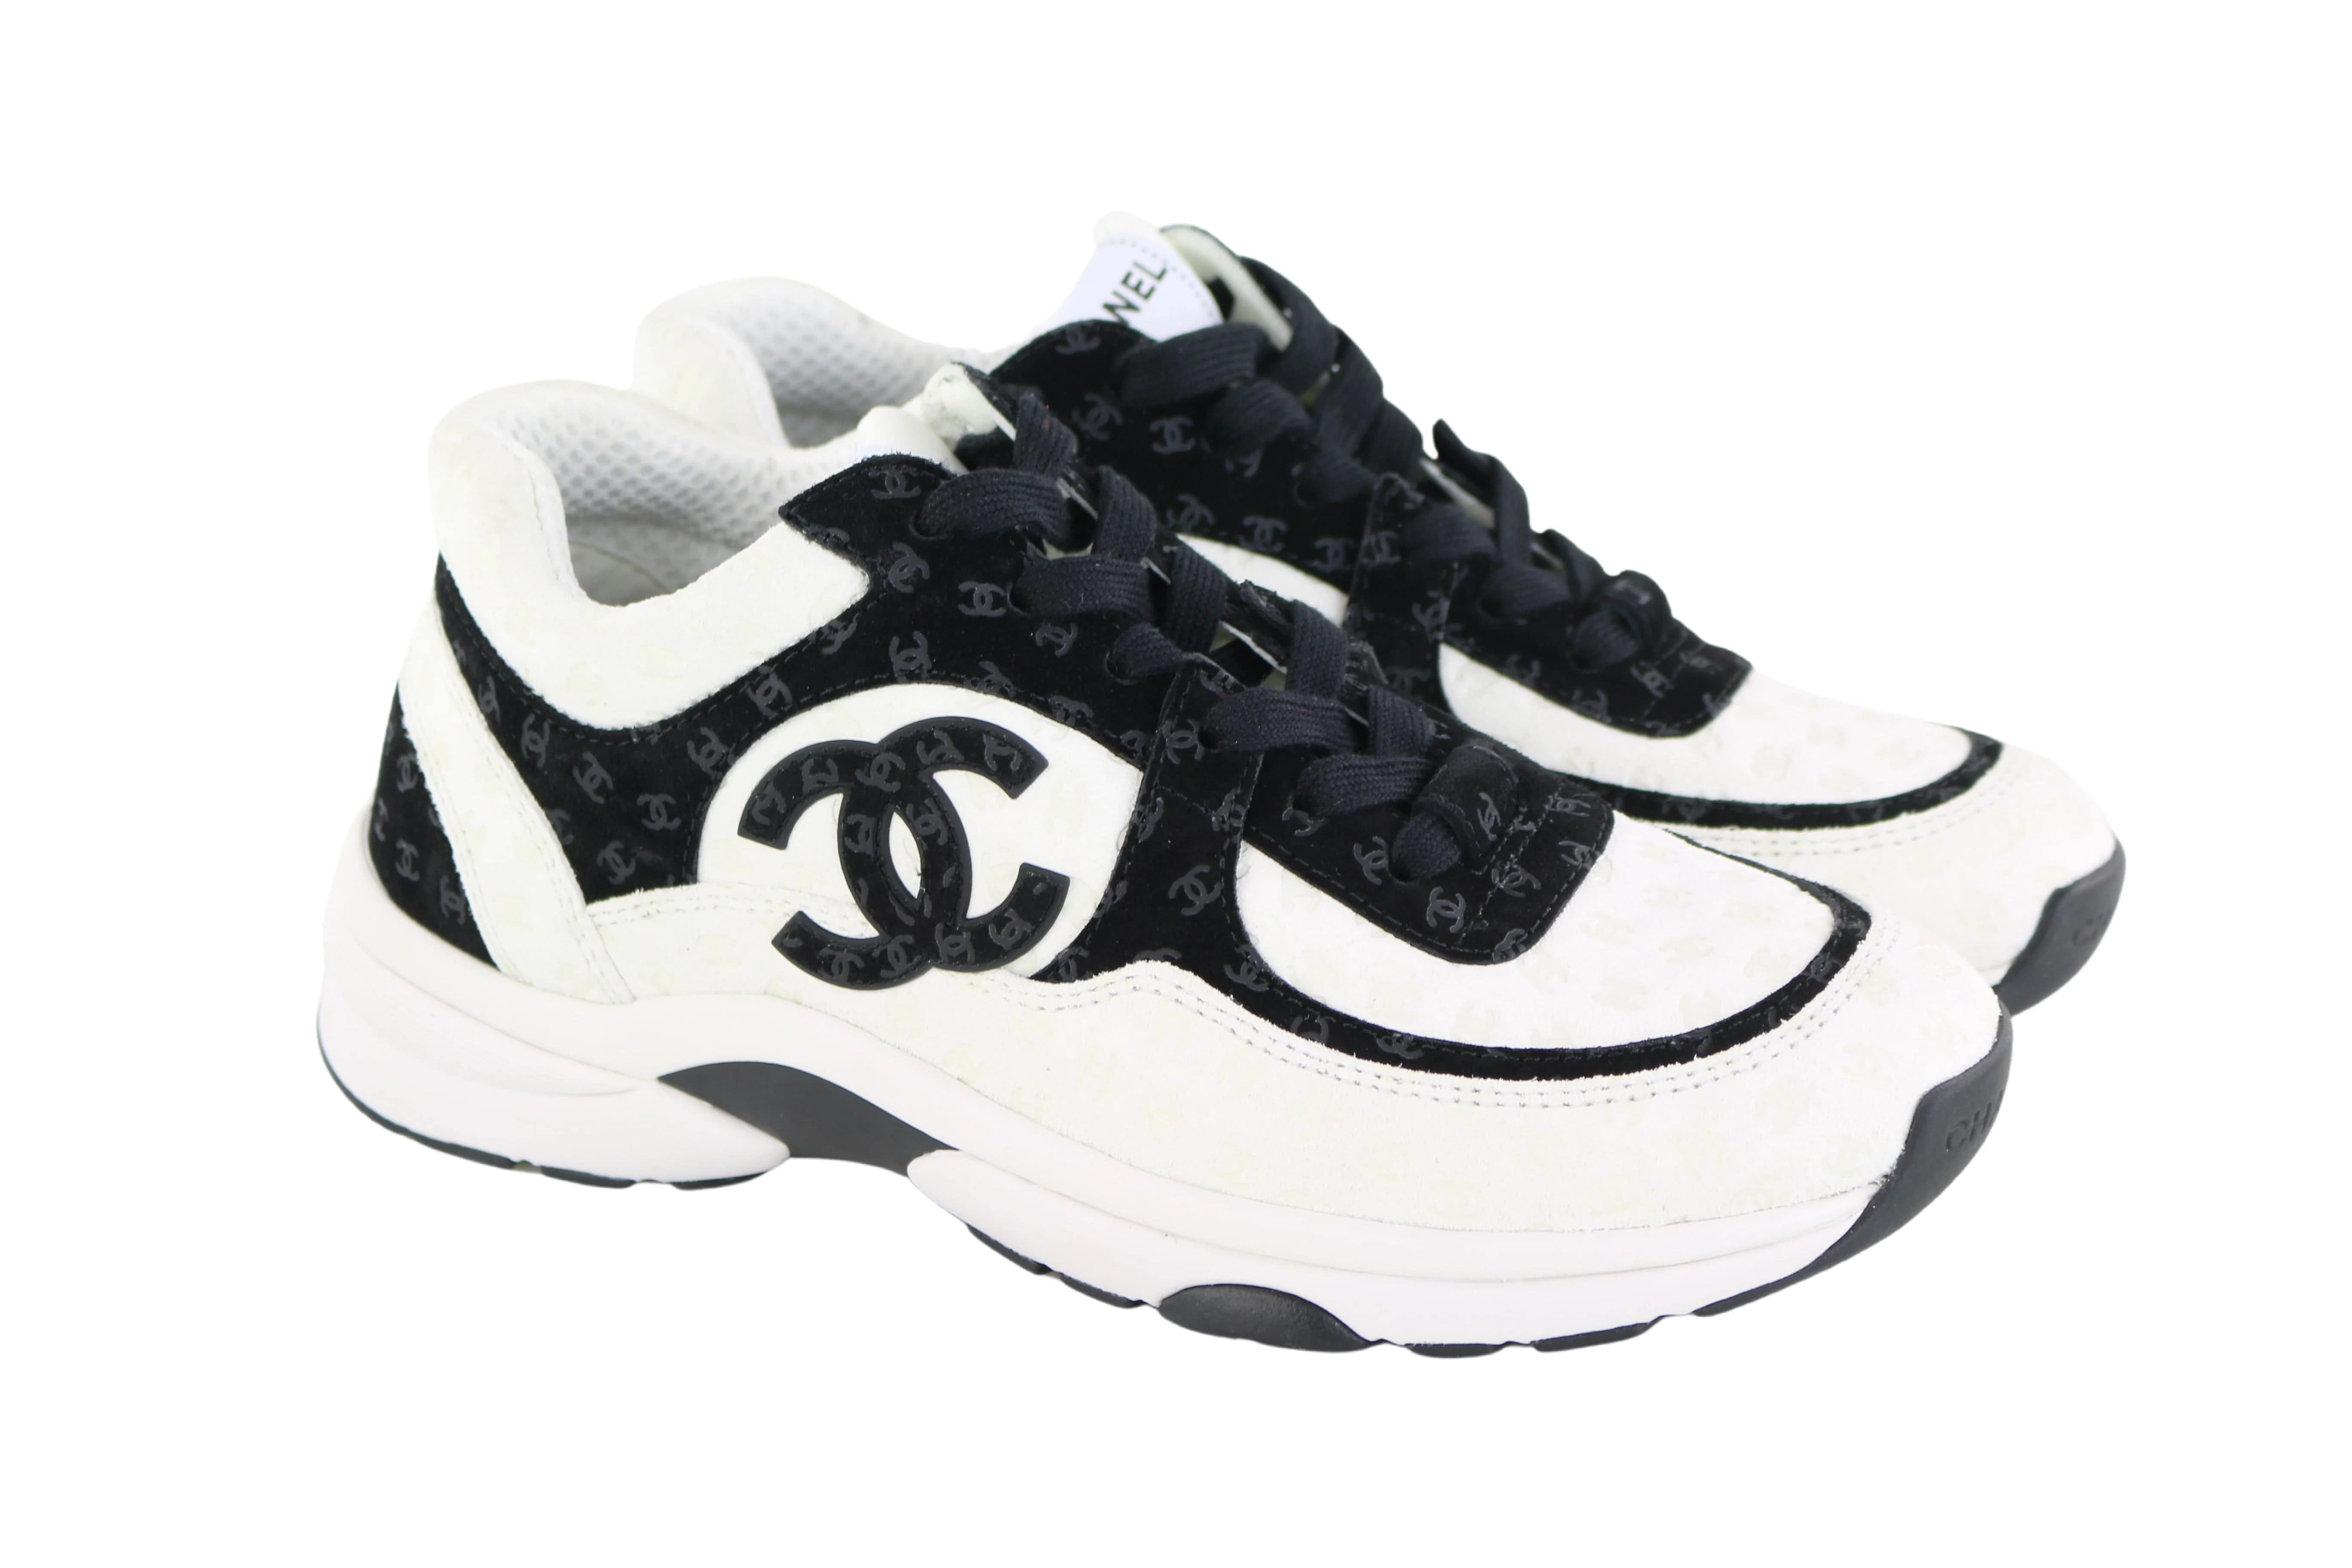 CHANEL CC BLACK Suede Velour Velvet Trainers Sneakers Shoes Lace Up G29134  Sz 38 $599.00 - PicClick